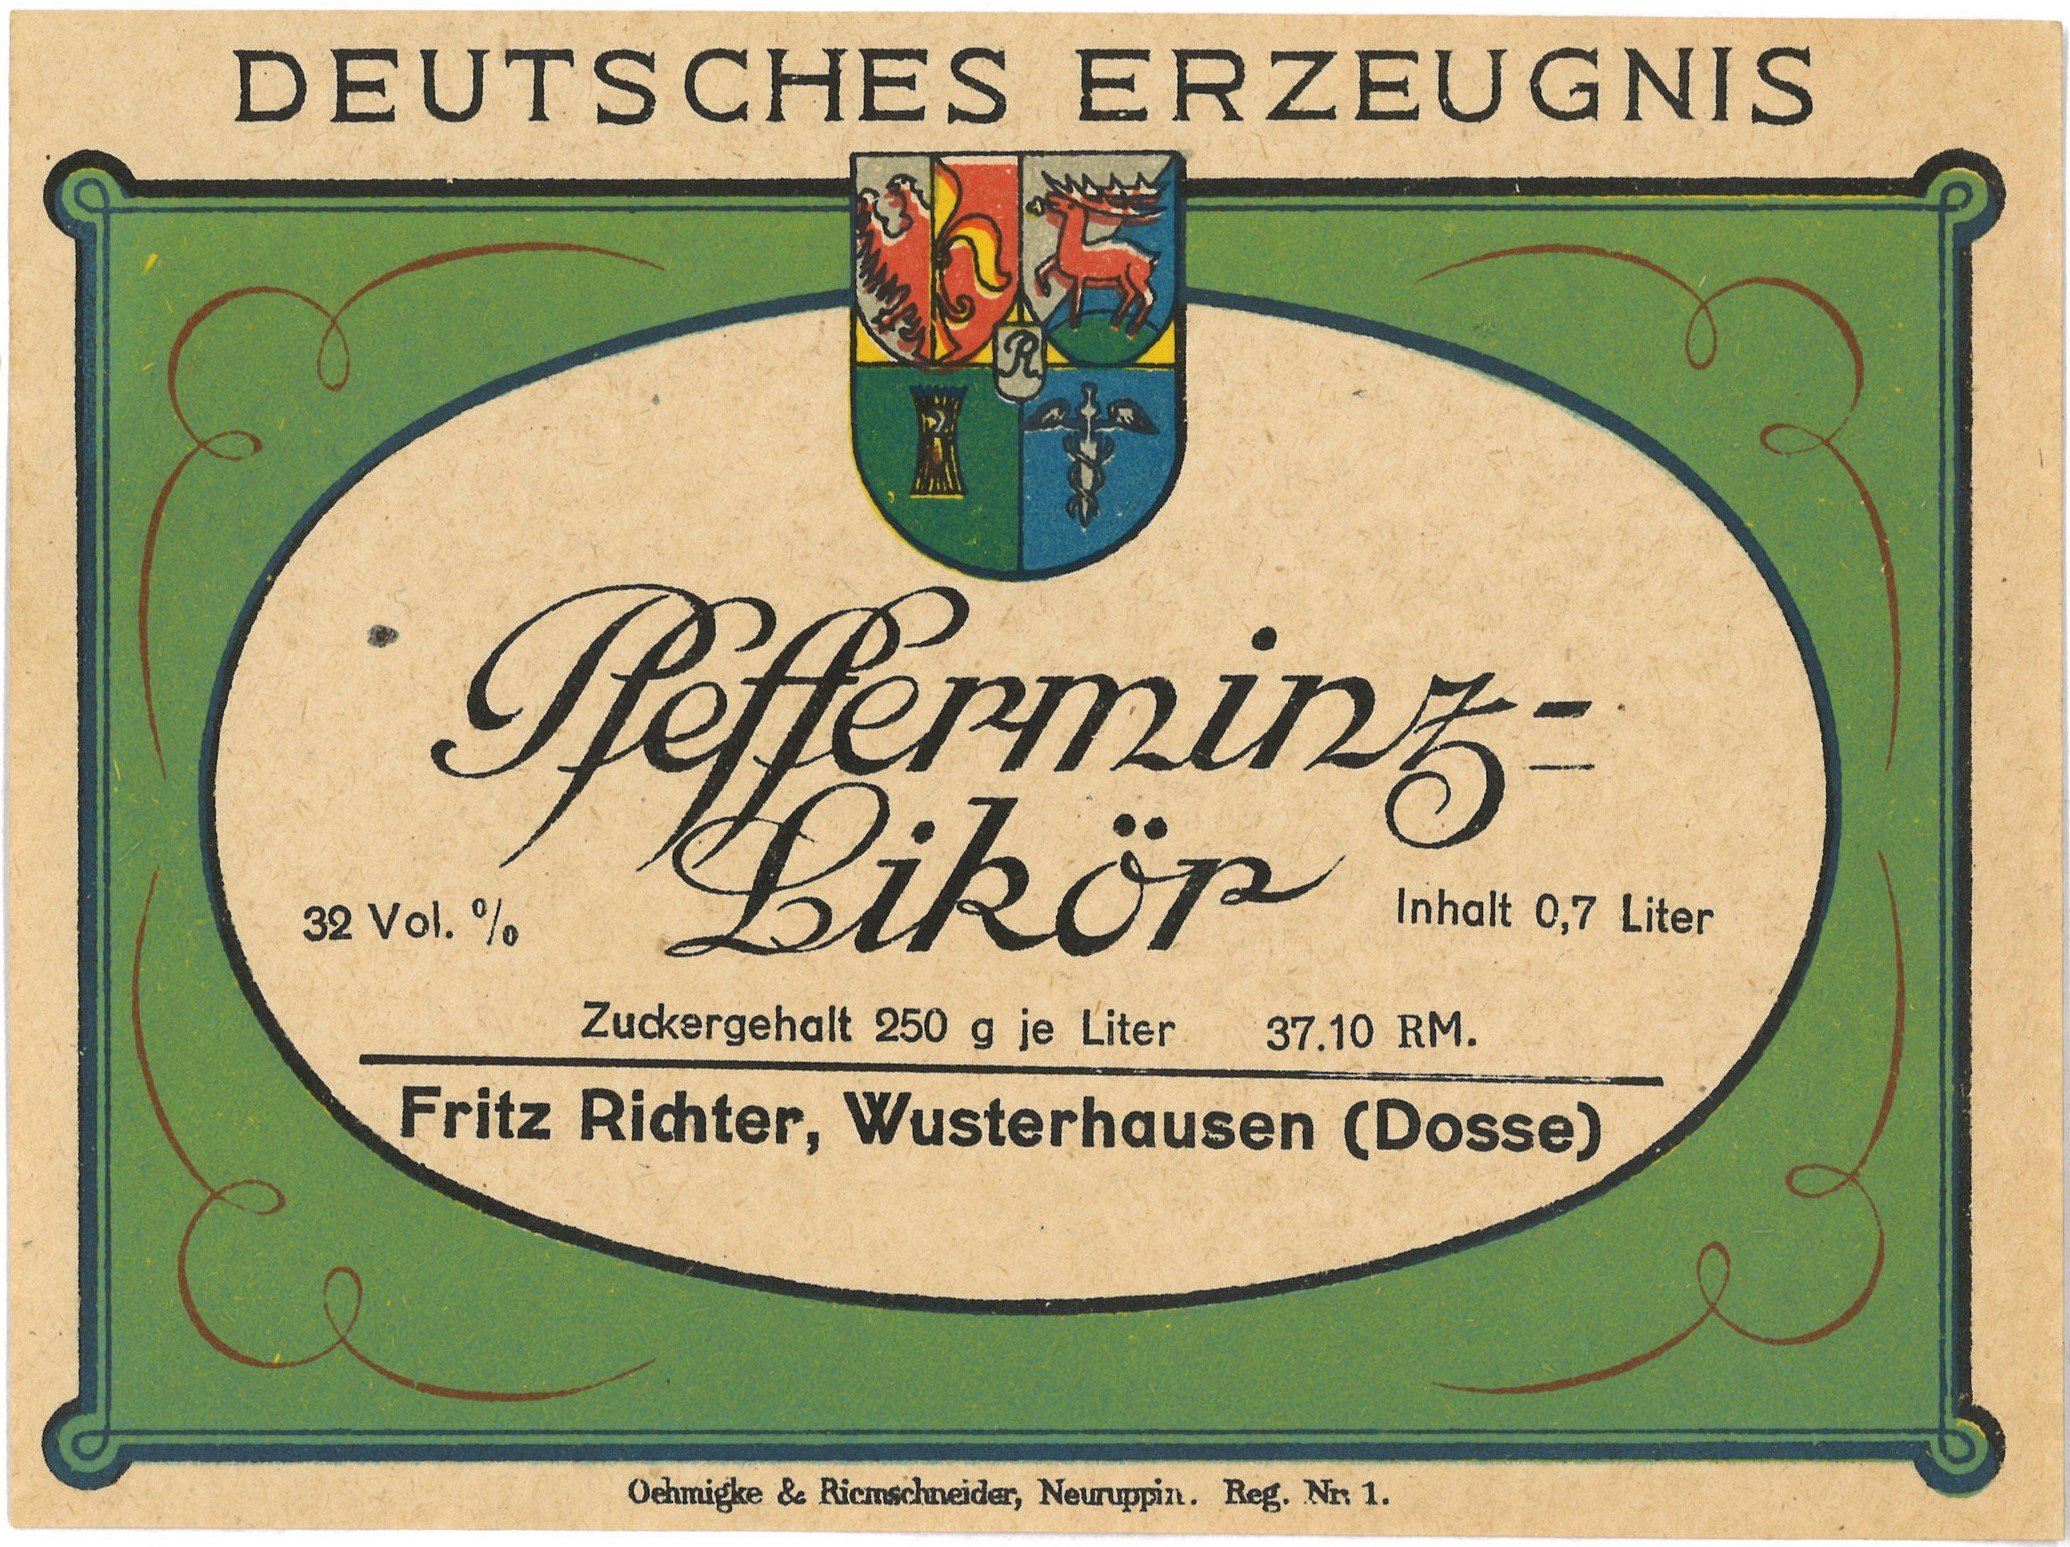 Wusterhausen/Dosse, Drogerie Fritz Richter: Pfefferminz-Likör (Landesgeschichtliche Vereinigung für die Mark Brandenburg e.V., Archiv CC BY)